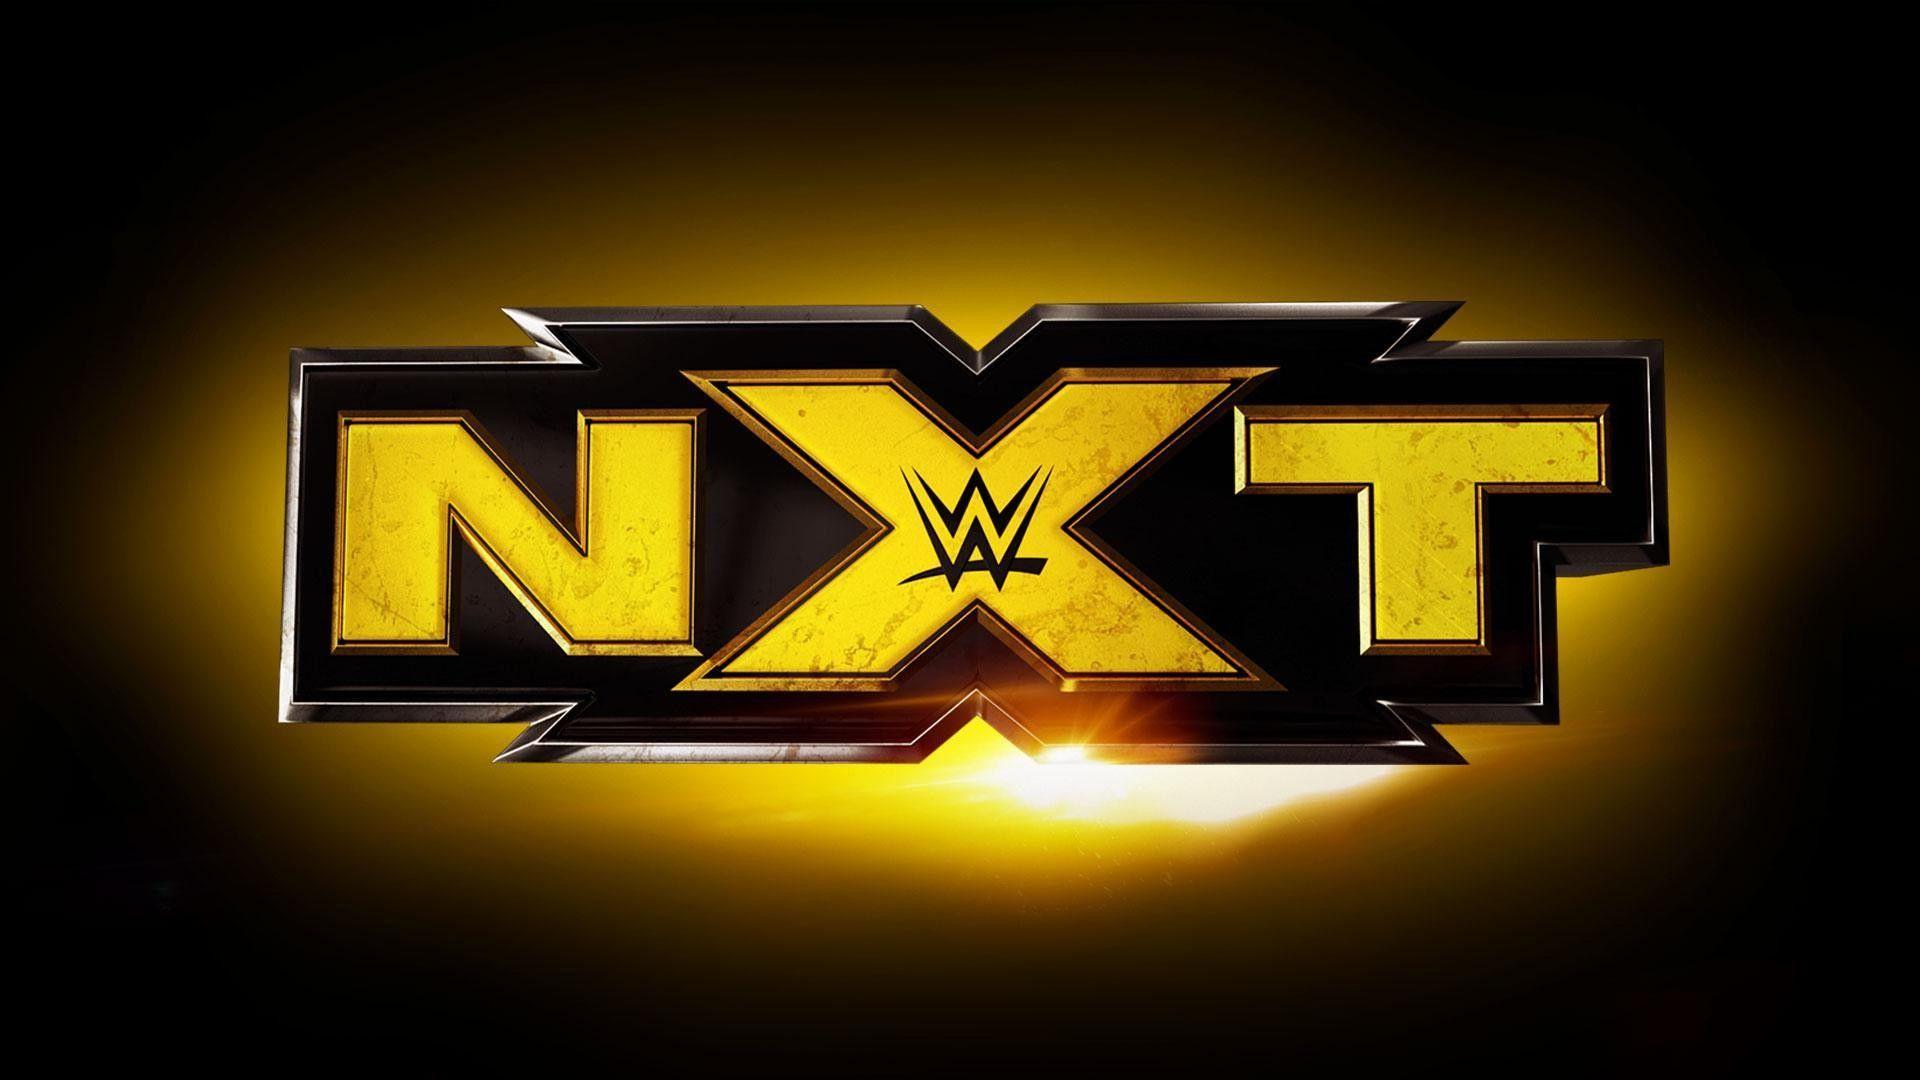 Wallpaper NXT WWE HD. Watch wrestling, Wwe news, Wwe